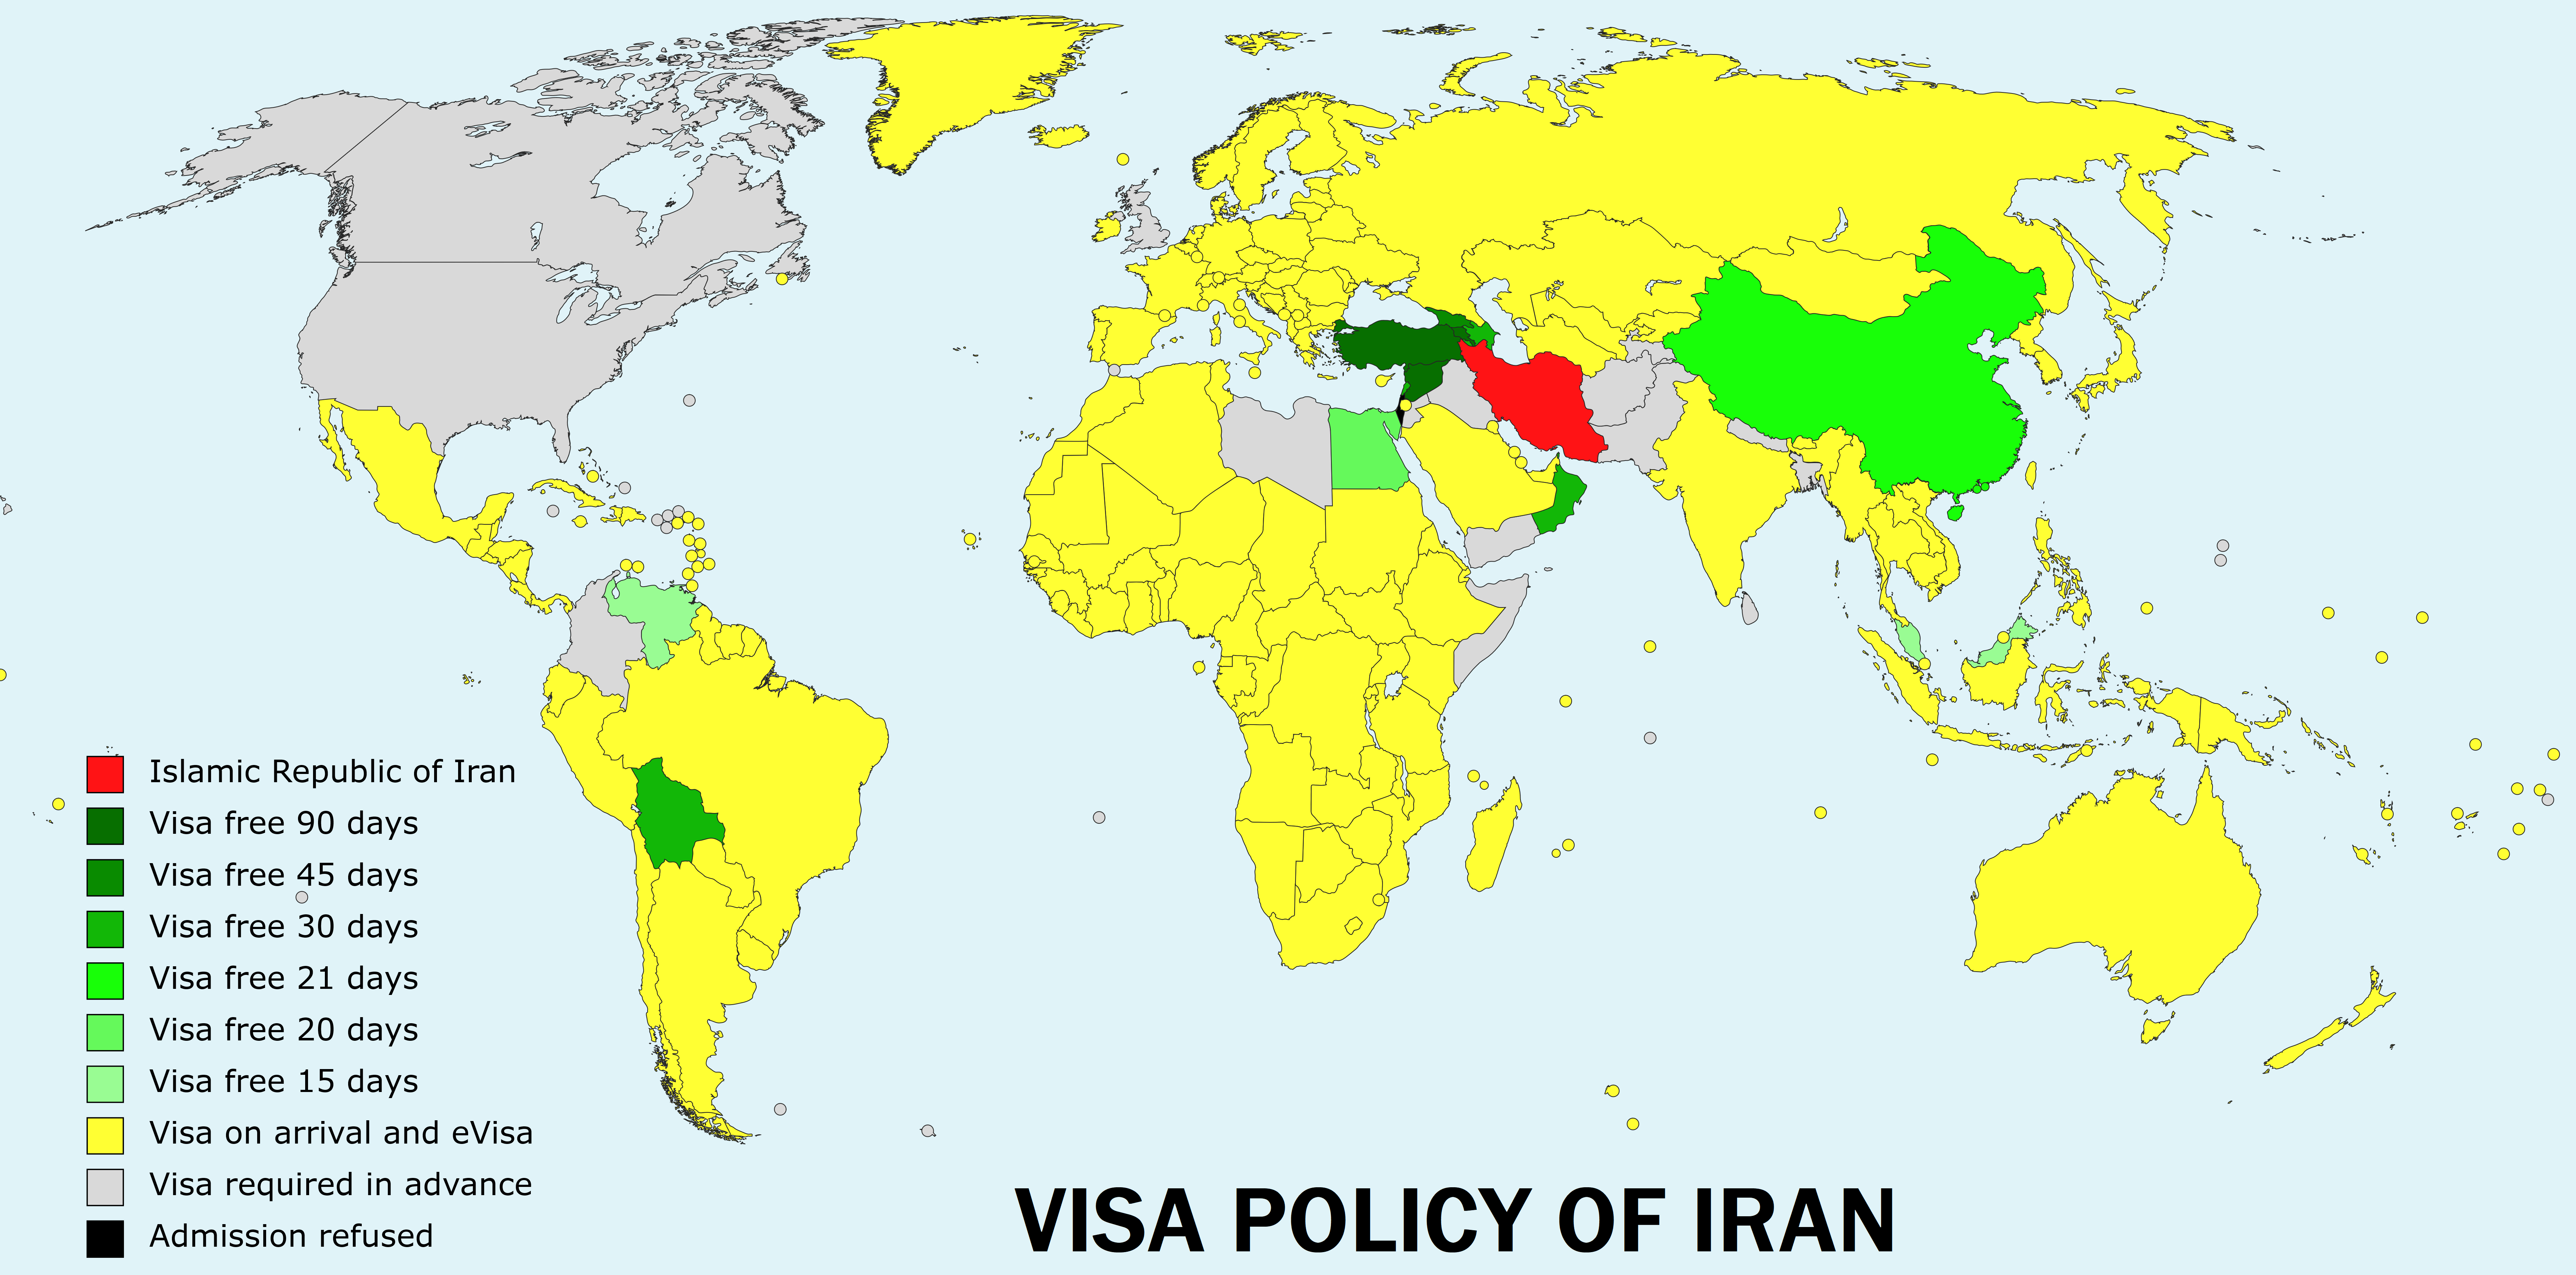 Visa_policy_of_Iran.png